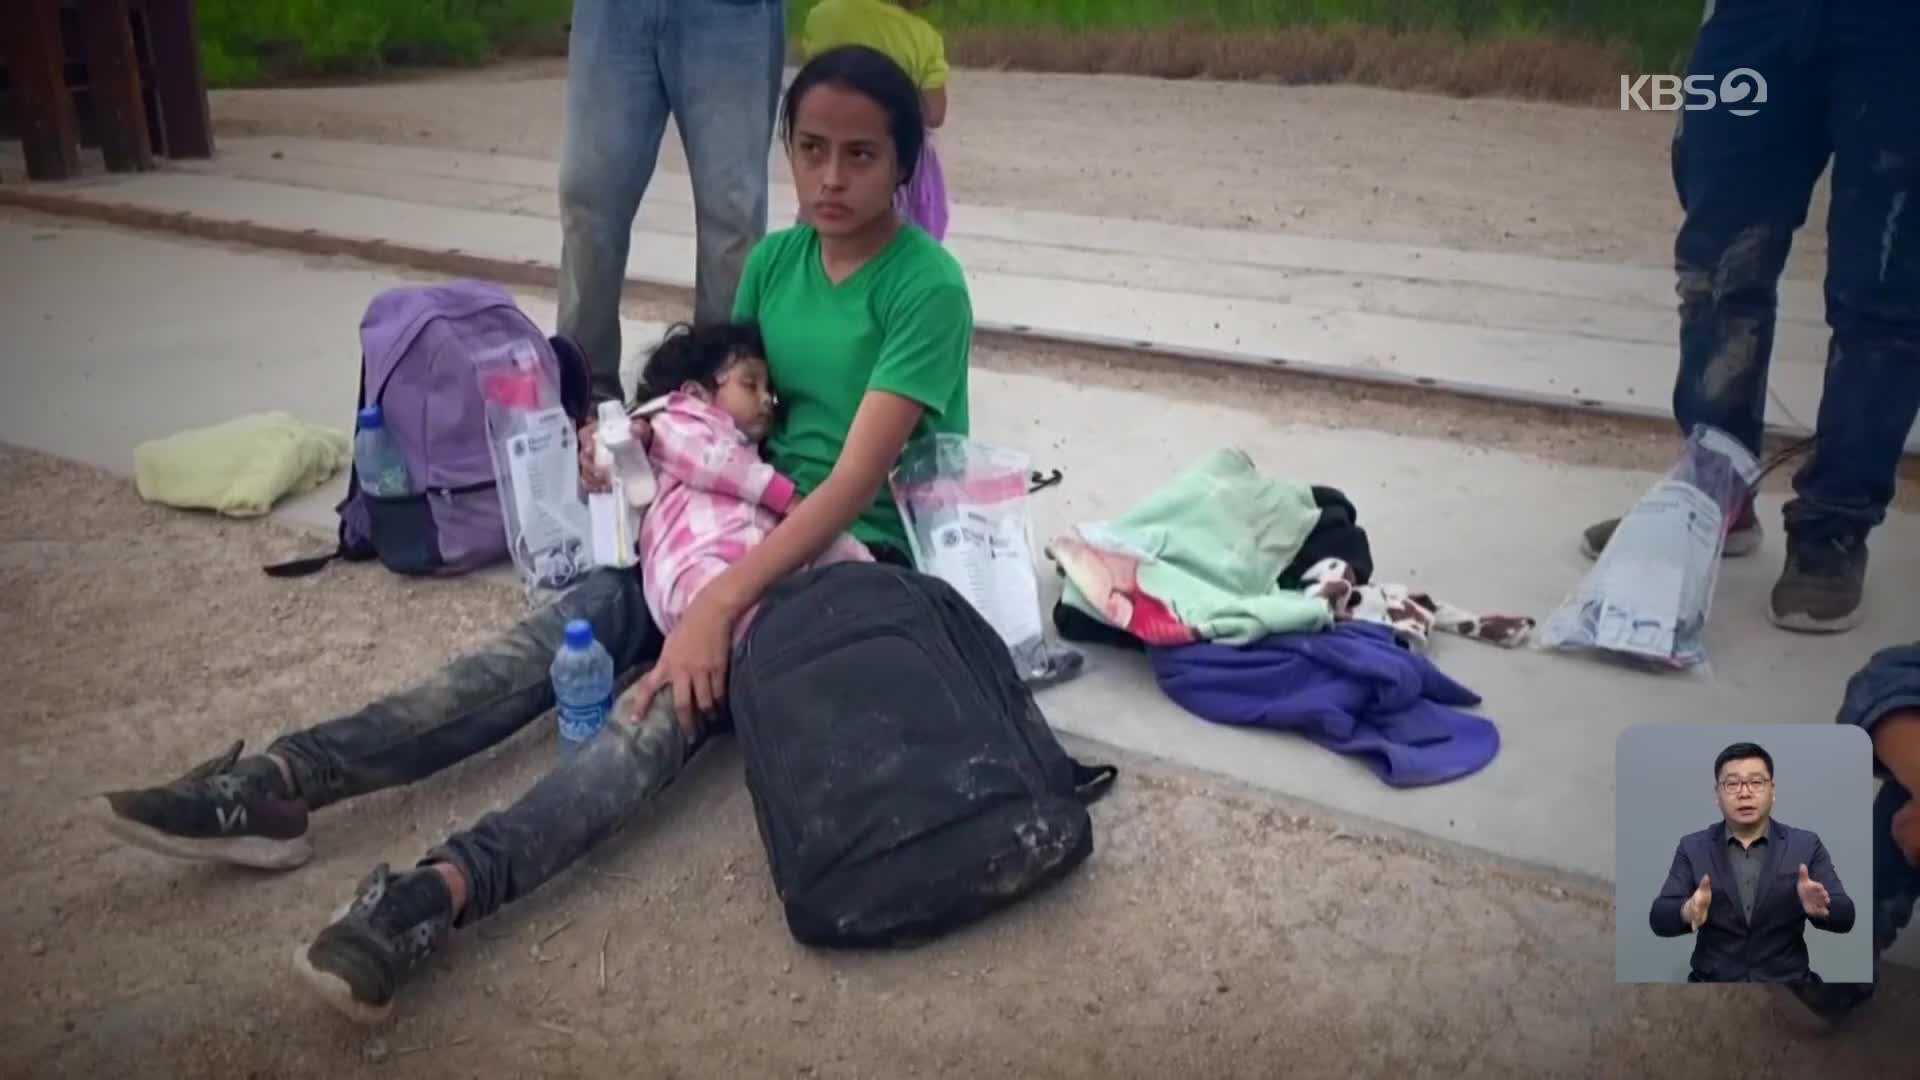 [지구촌 IN] 홀로 국경 넘는 아이들…美 이민 정책 ‘시험대’